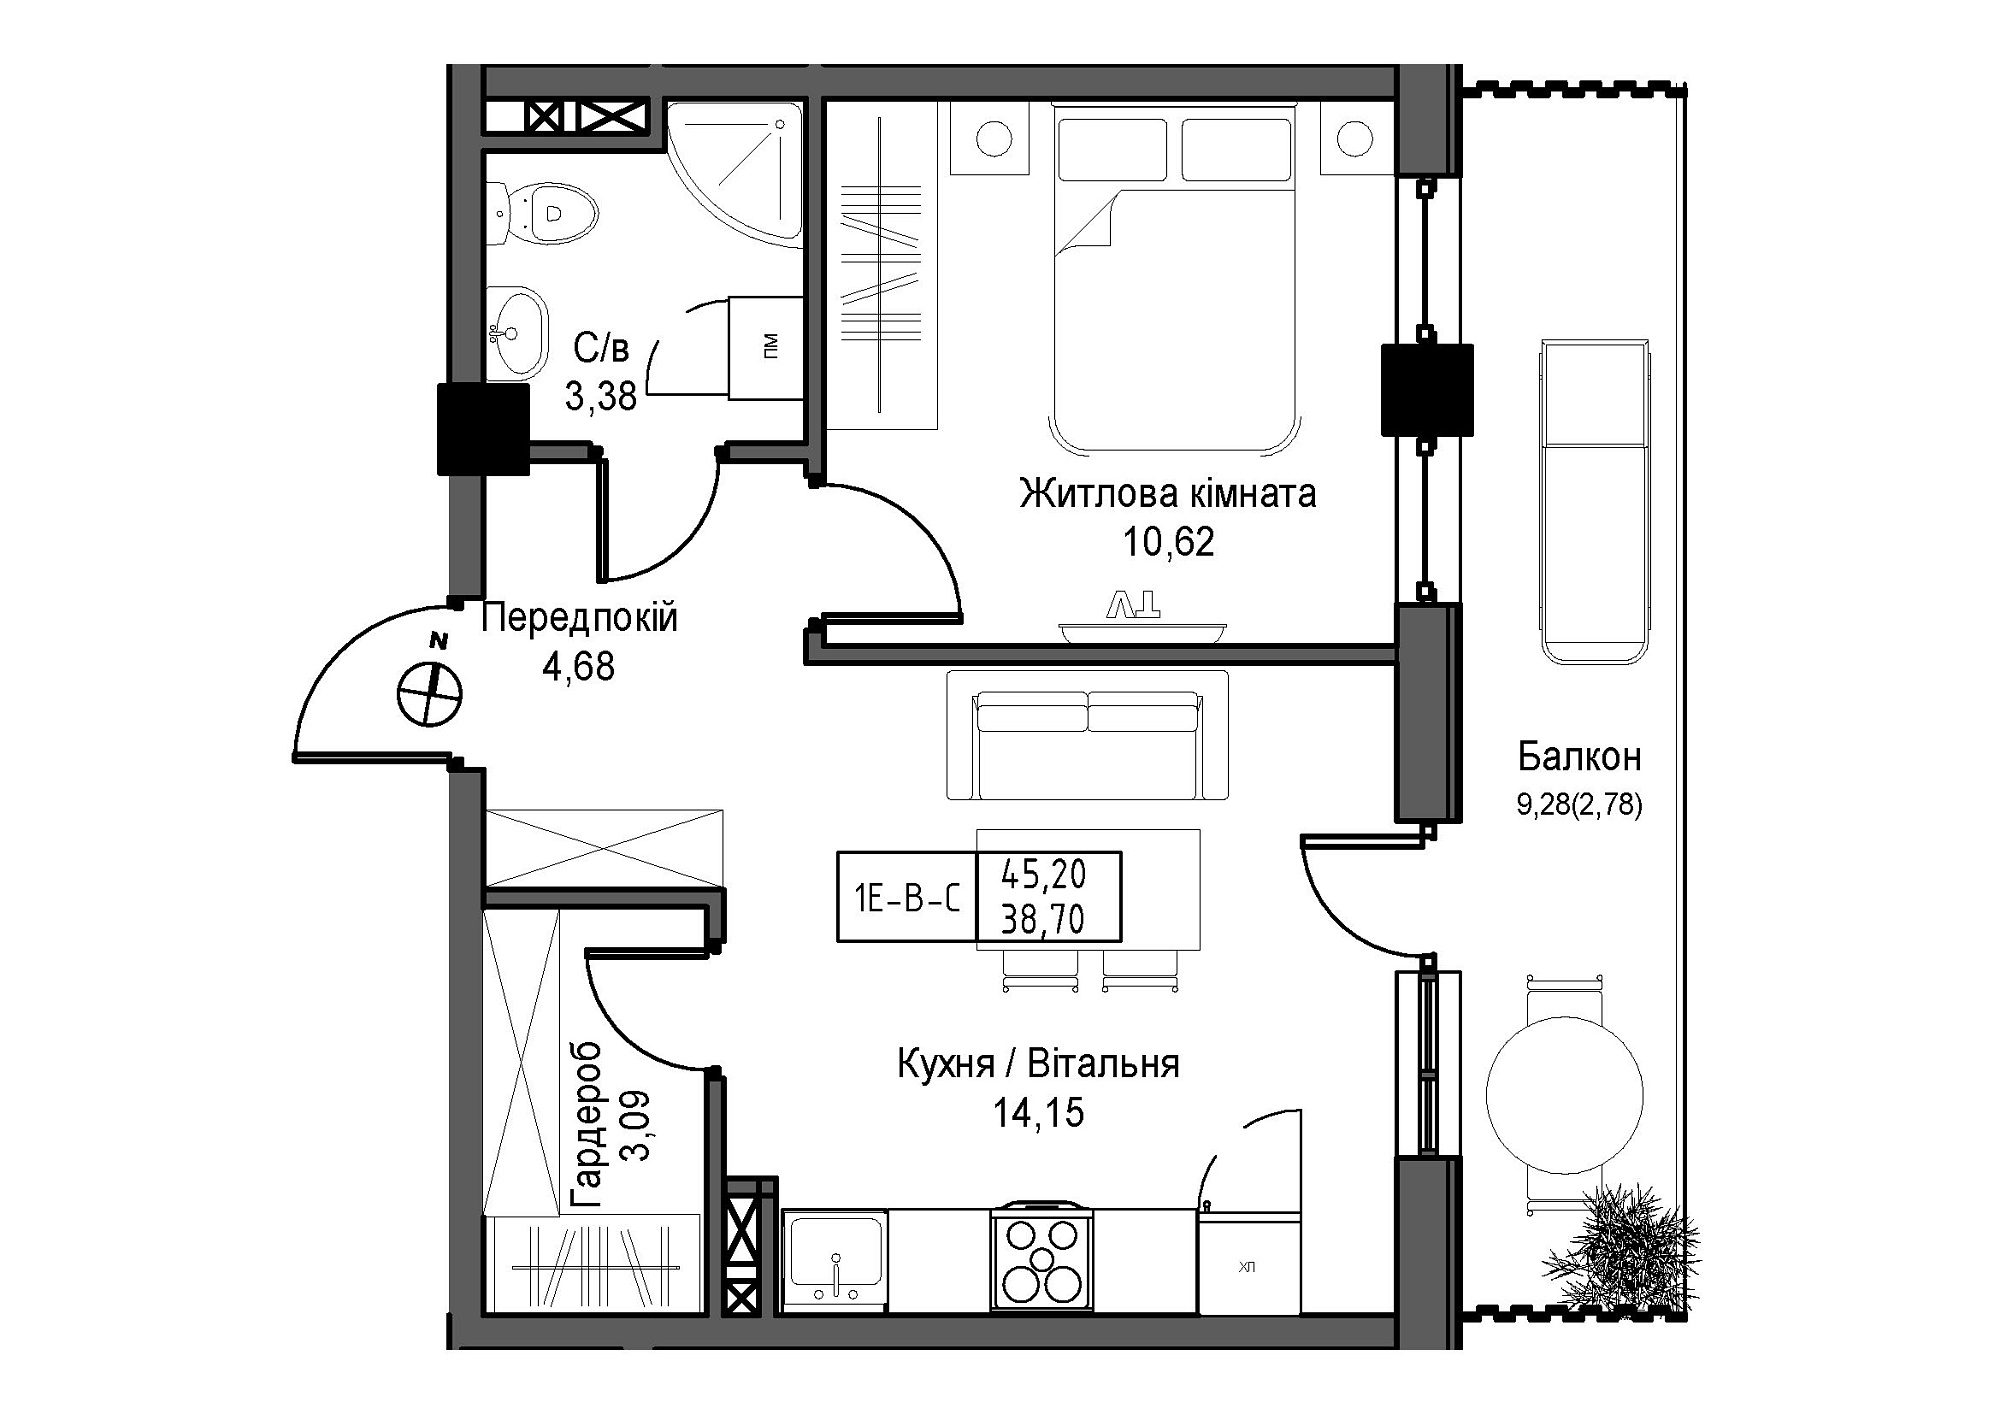 Планировка 1-к квартира площей 38.7м2, UM-007-08/0006.